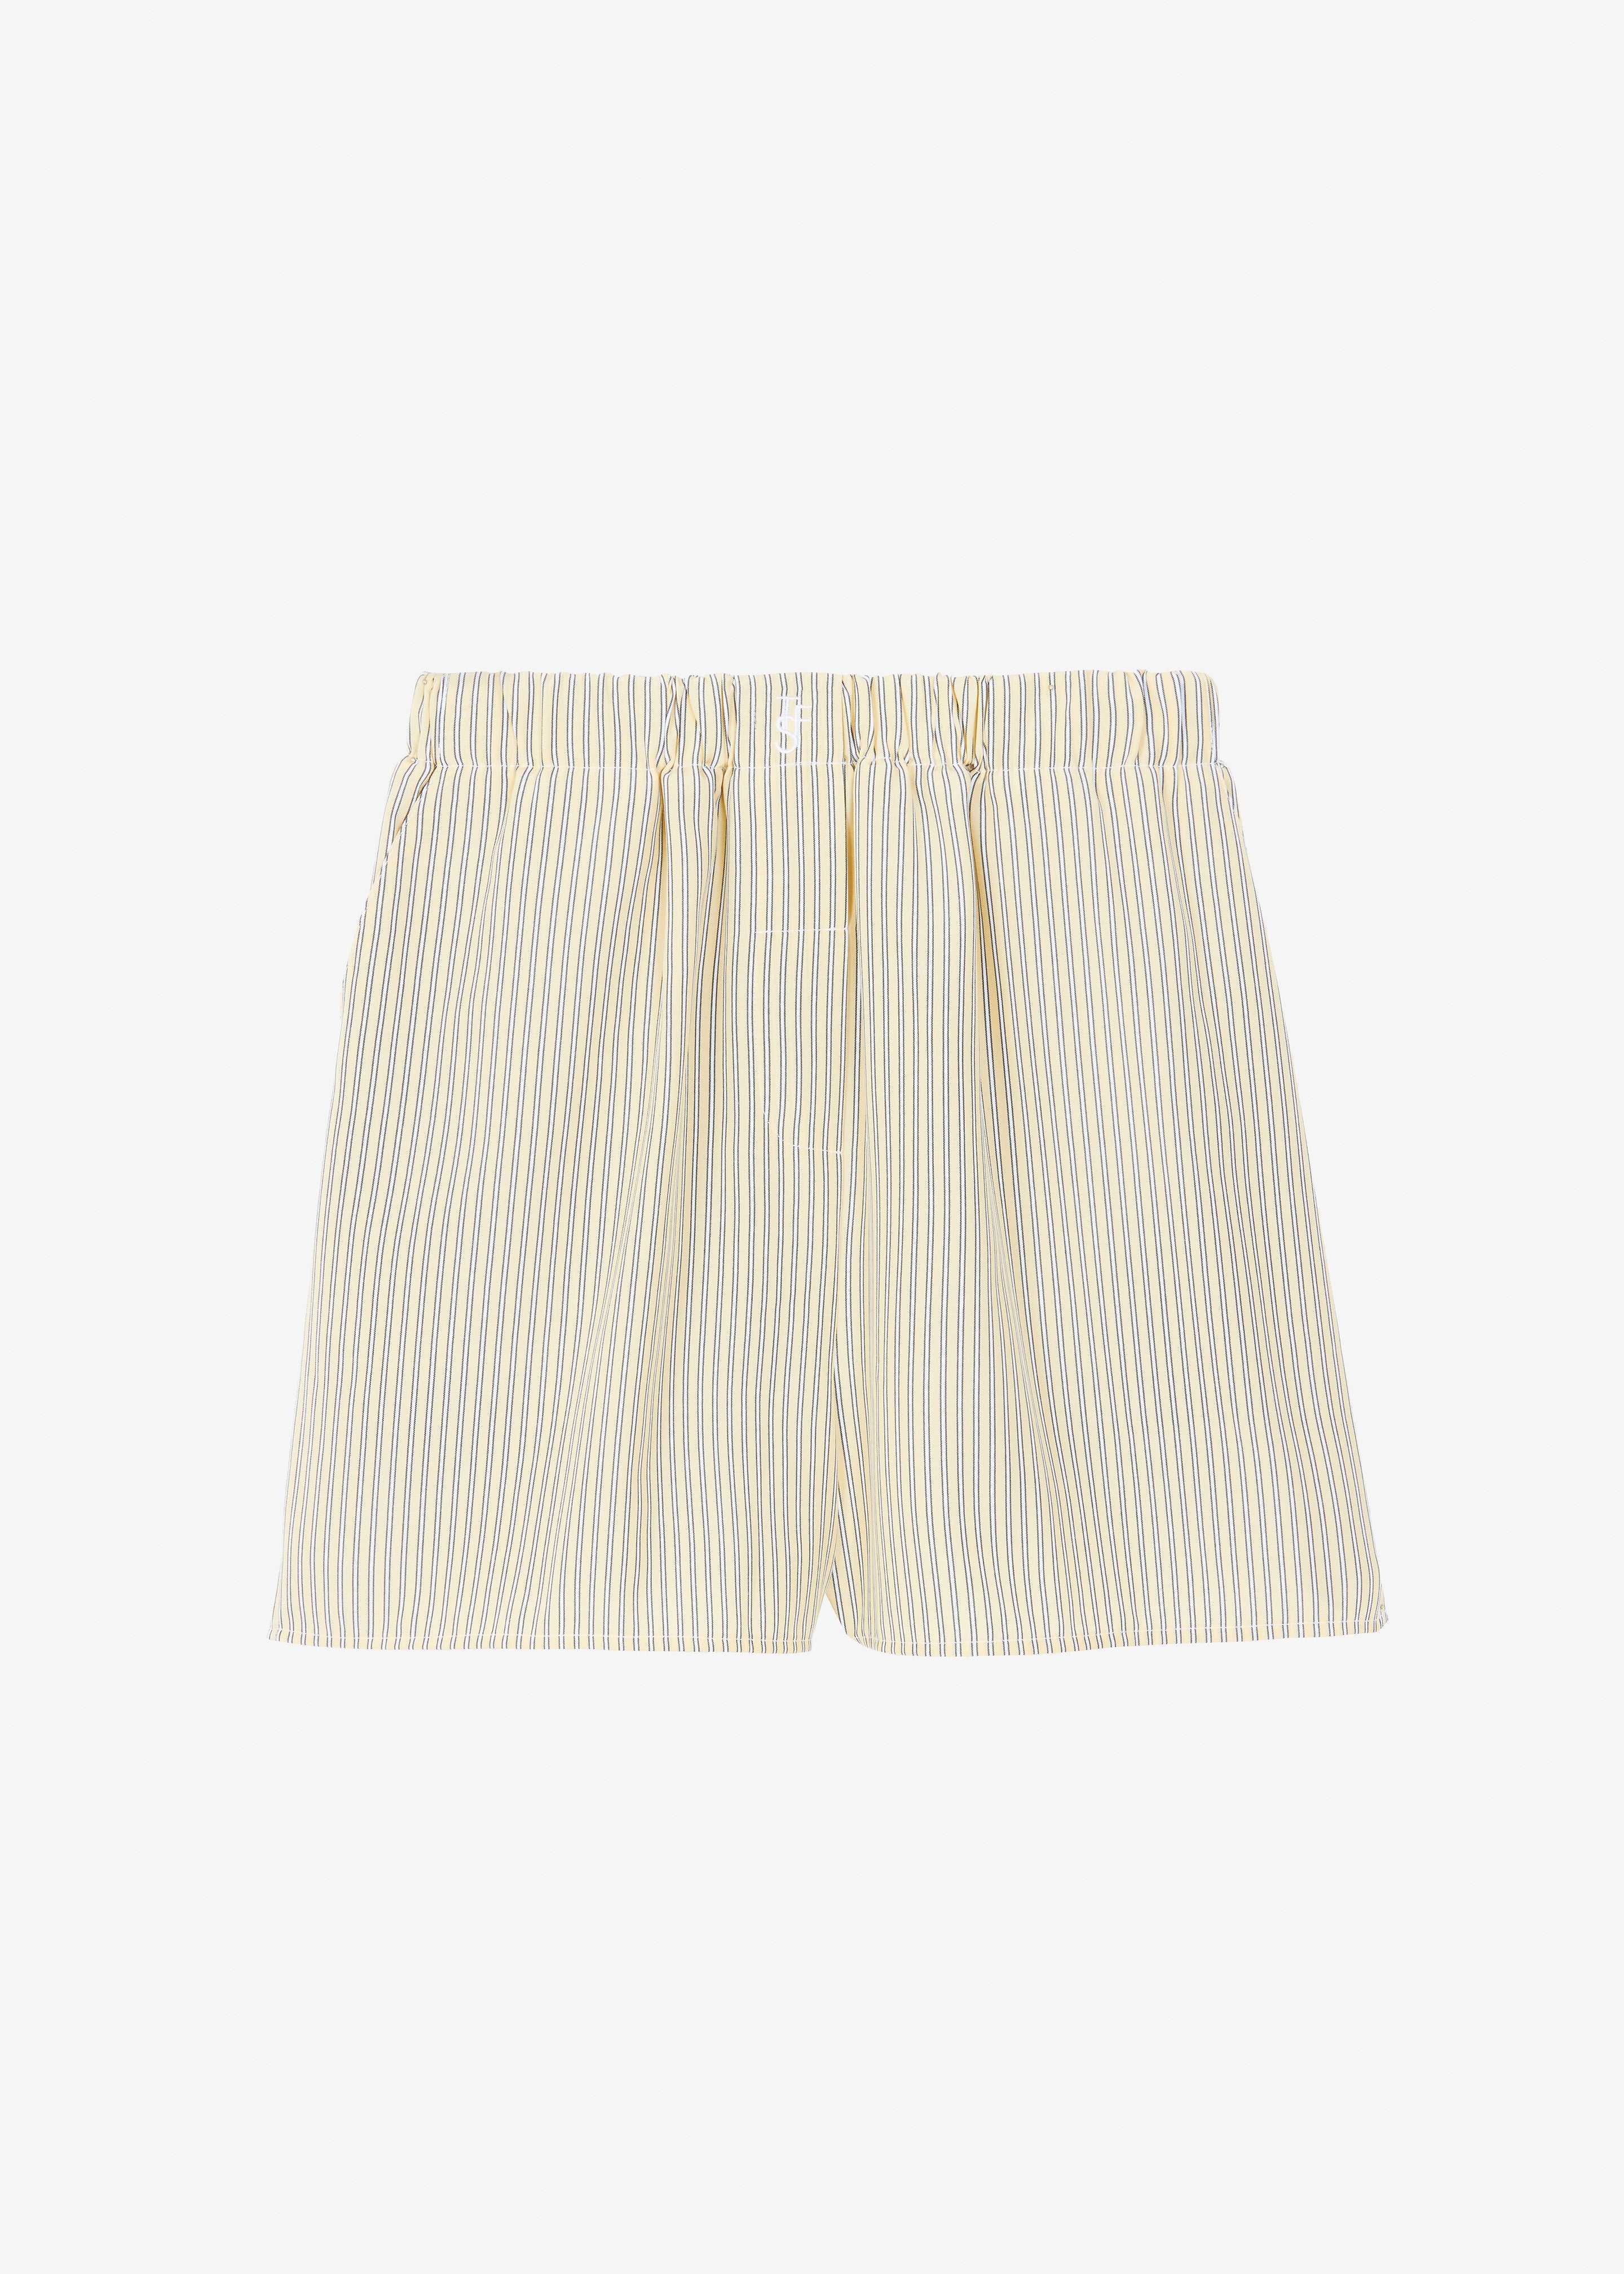 Lui Oxford Boxer Shorts - Pale Yellow/Black Stripe - 7